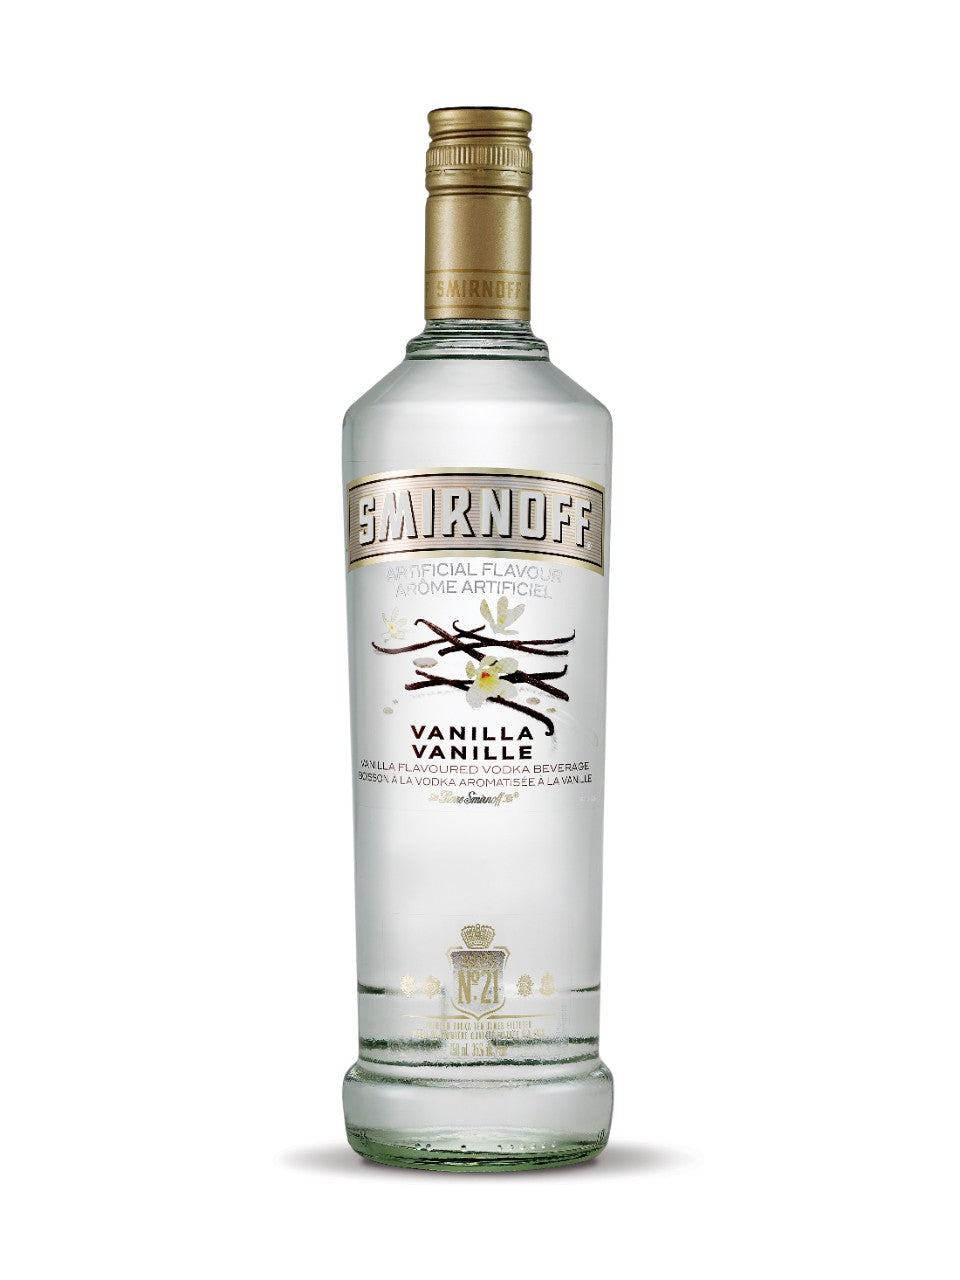 Smirnoff Vanilla Flavoured Vodka 750 mL bottle